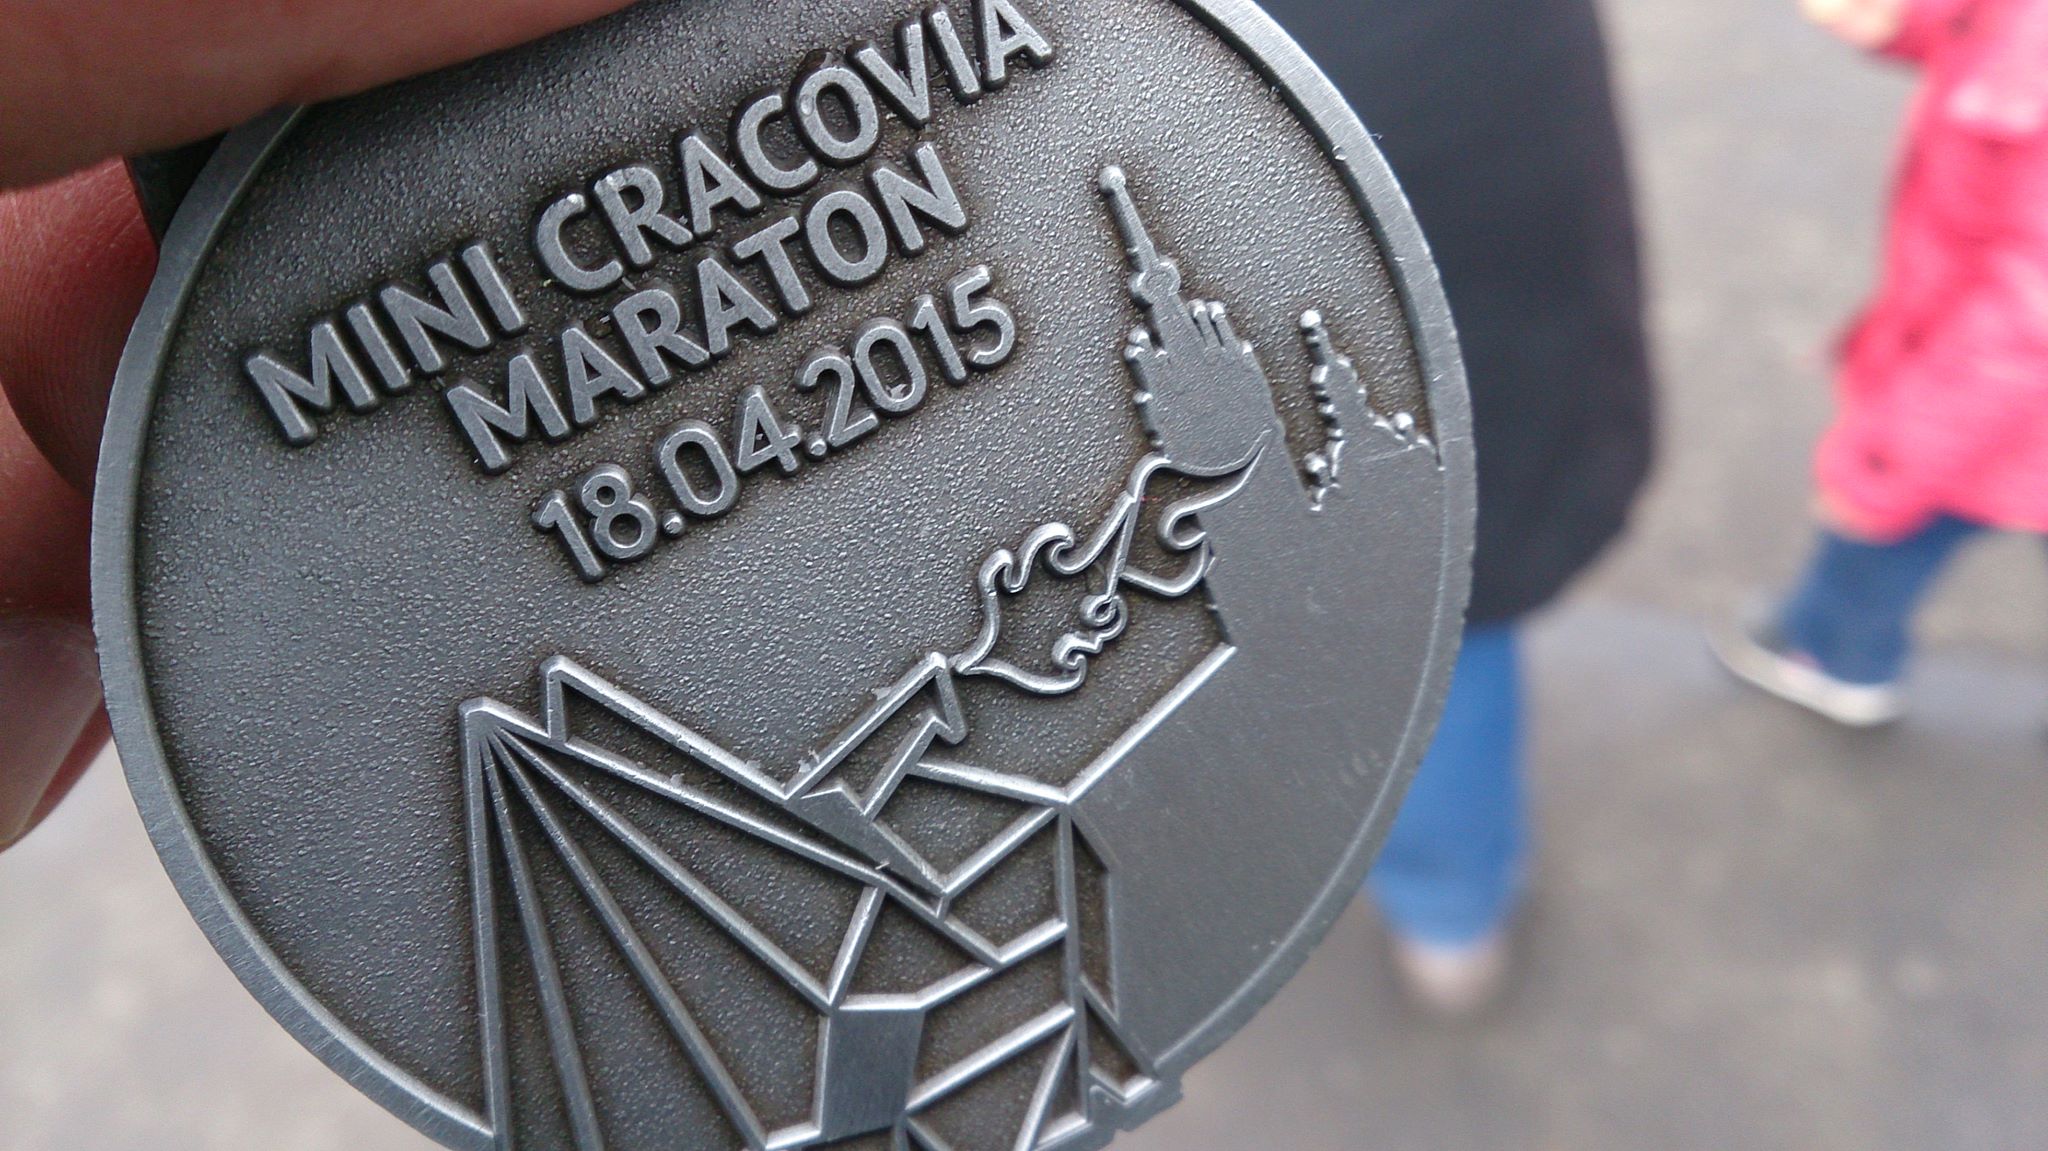 Pierwsze oficjalne wyniki z biegów Cracovia